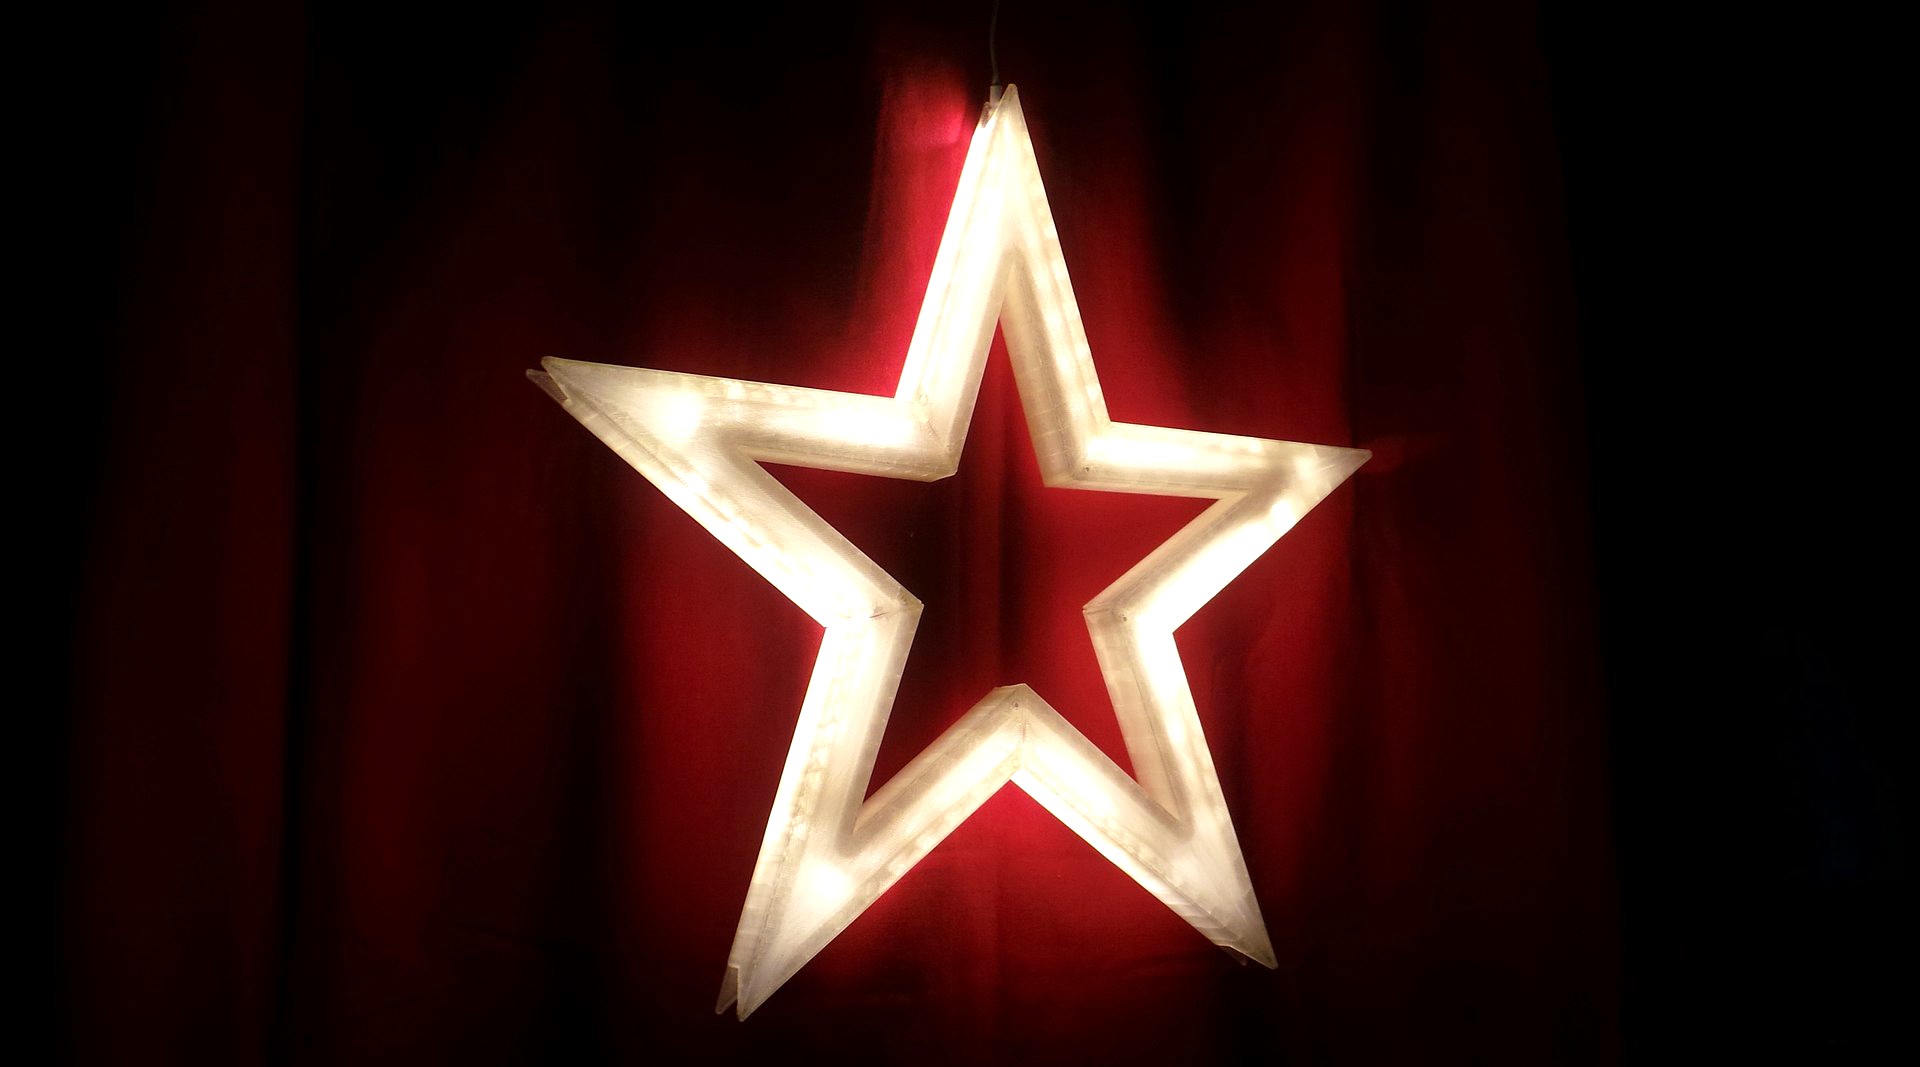 Vega - The LED-lit Christmas Star